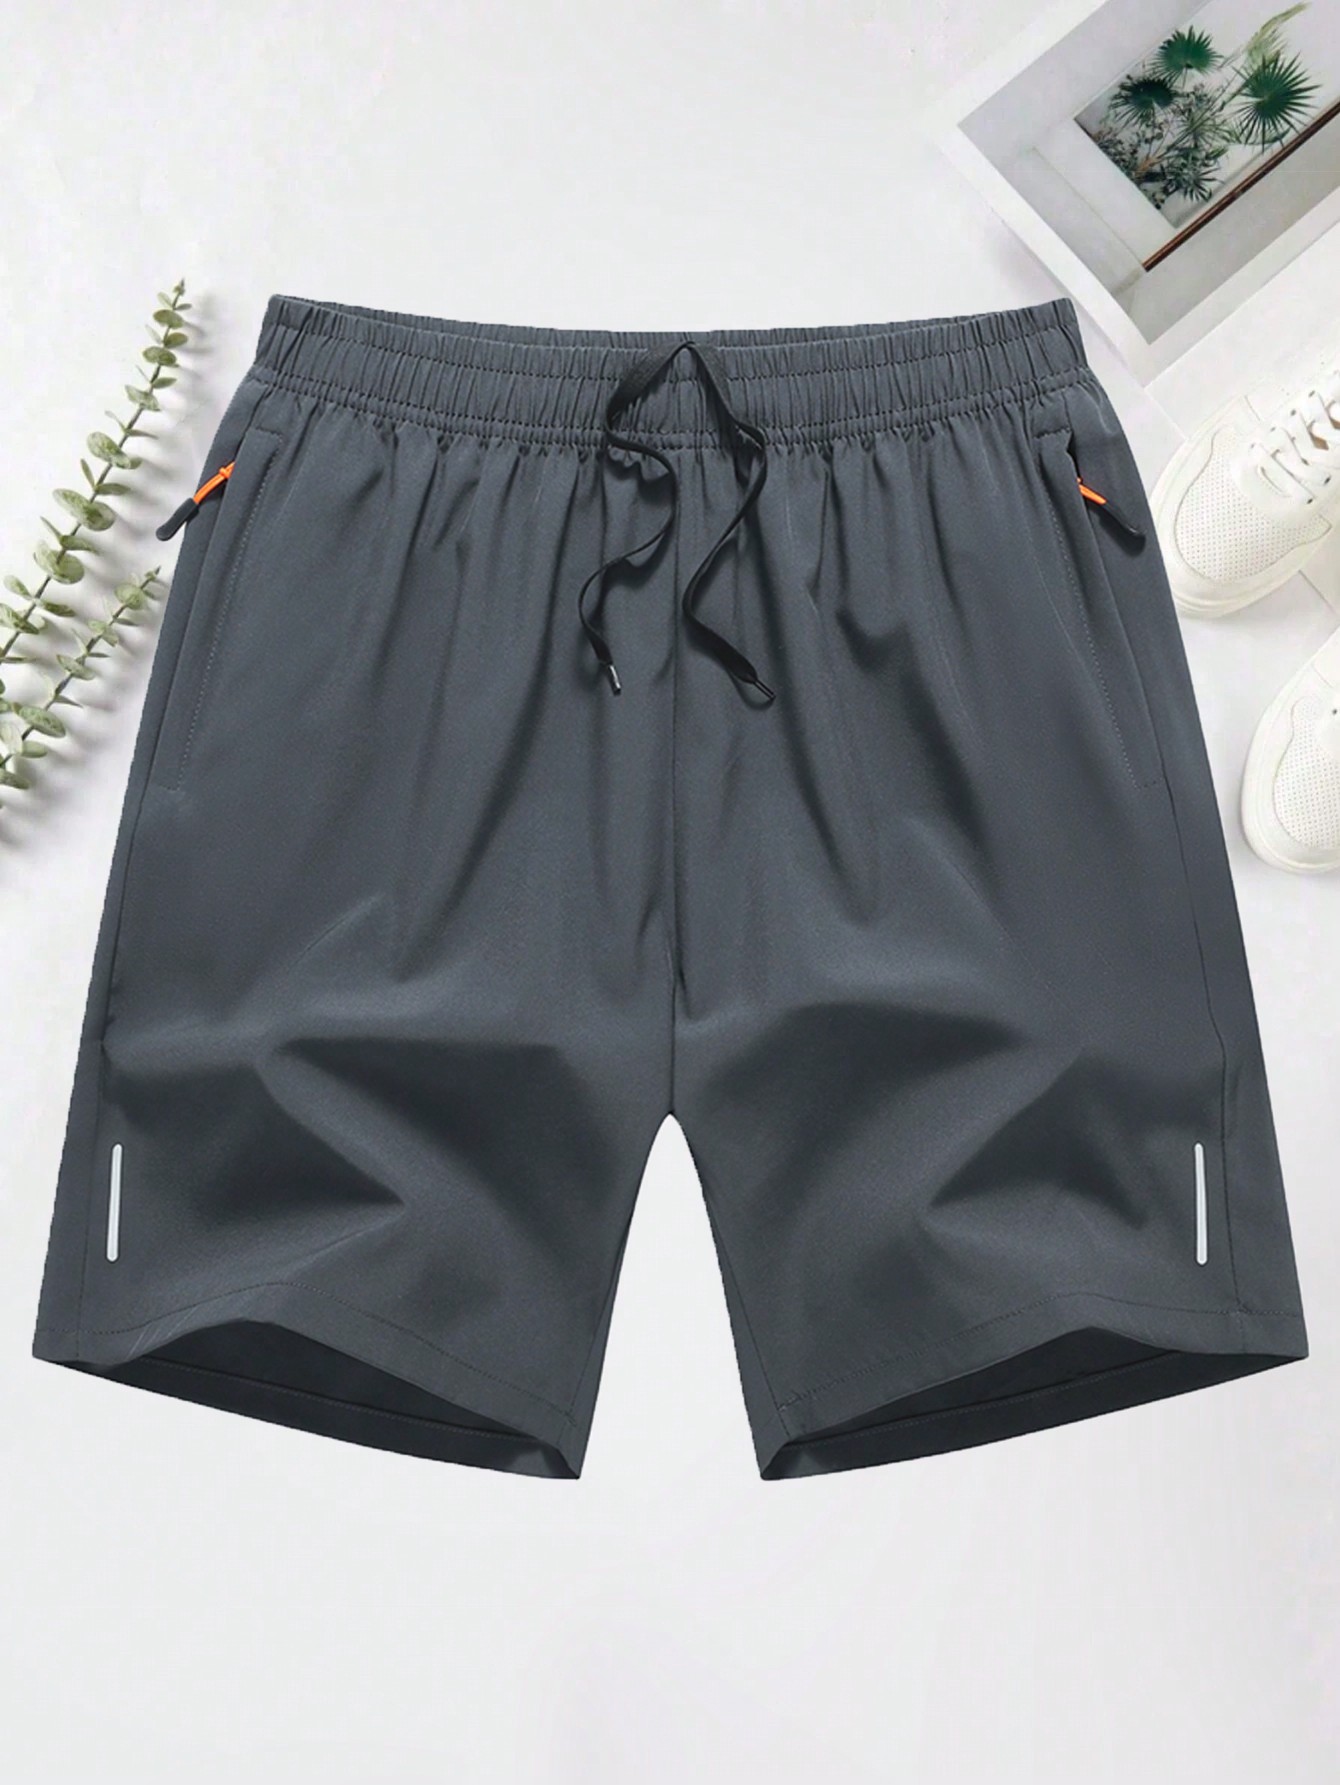 Мужские повседневные спортивные шорты с эластичной резинкой на талии, светло-серый спортивные брюки adidas мужские серые